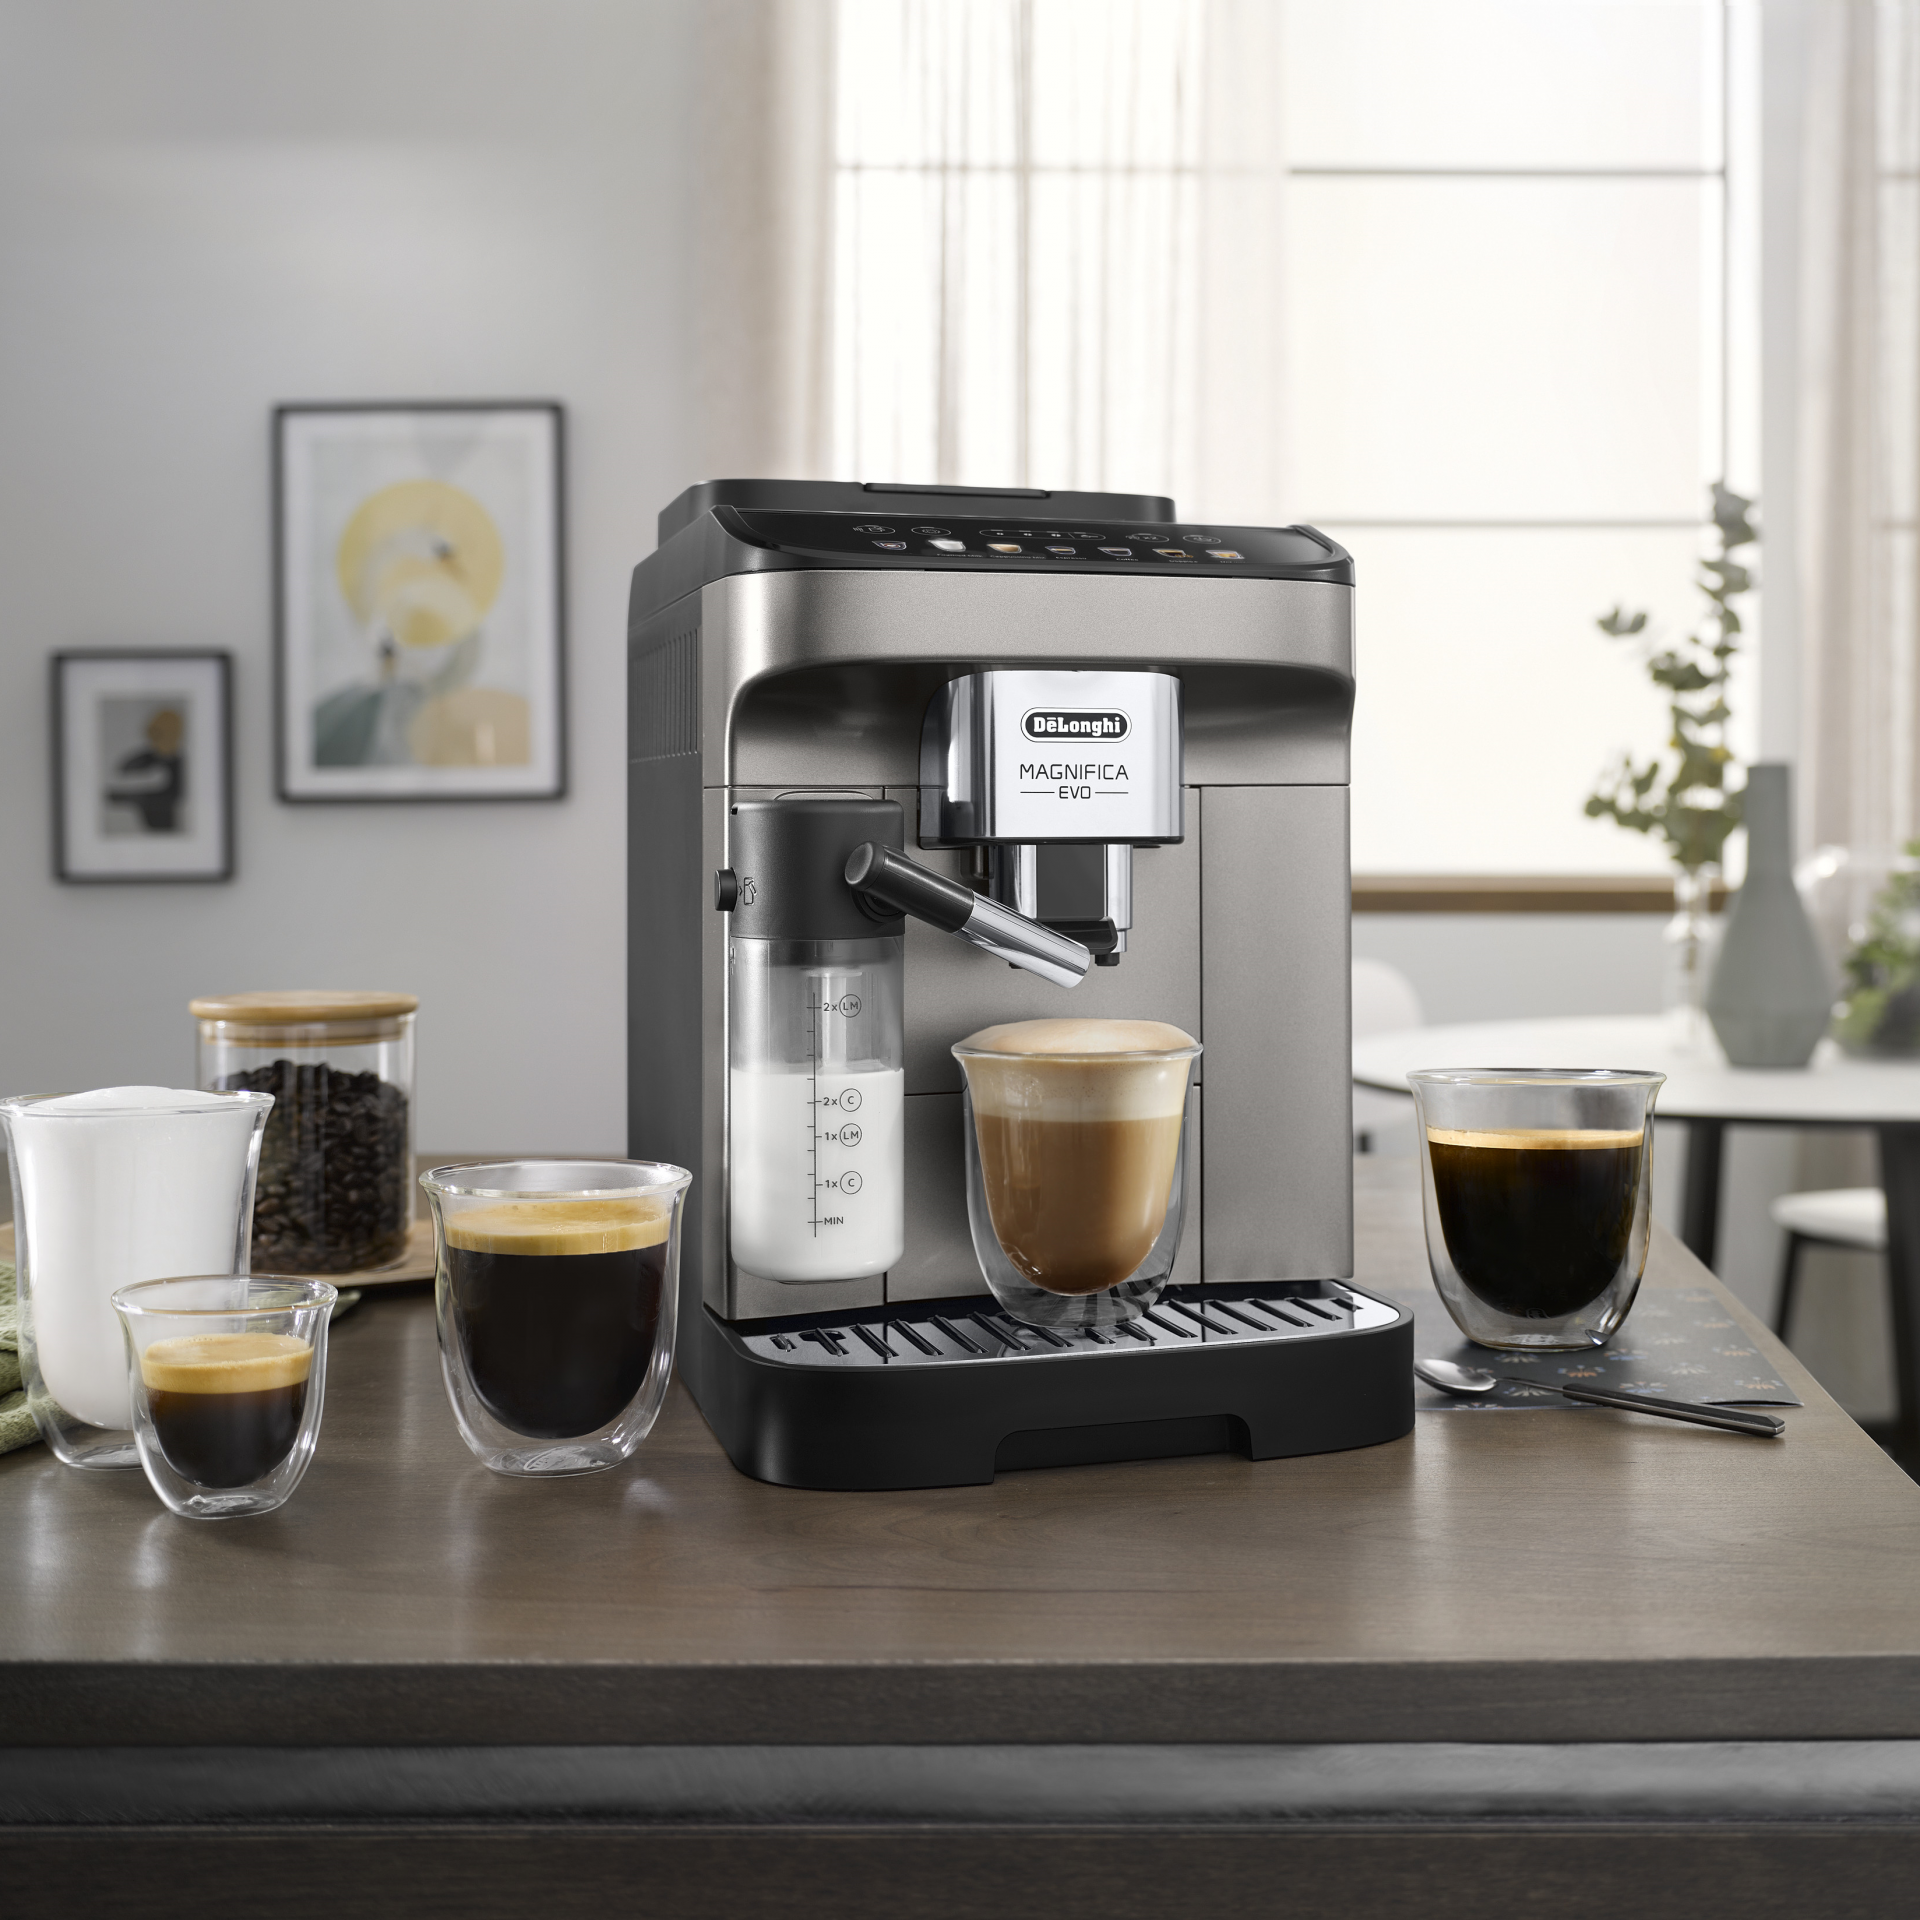 De'Longhi Magnifica Evo automatic espresso machine in kitchen with cappuccino and long black